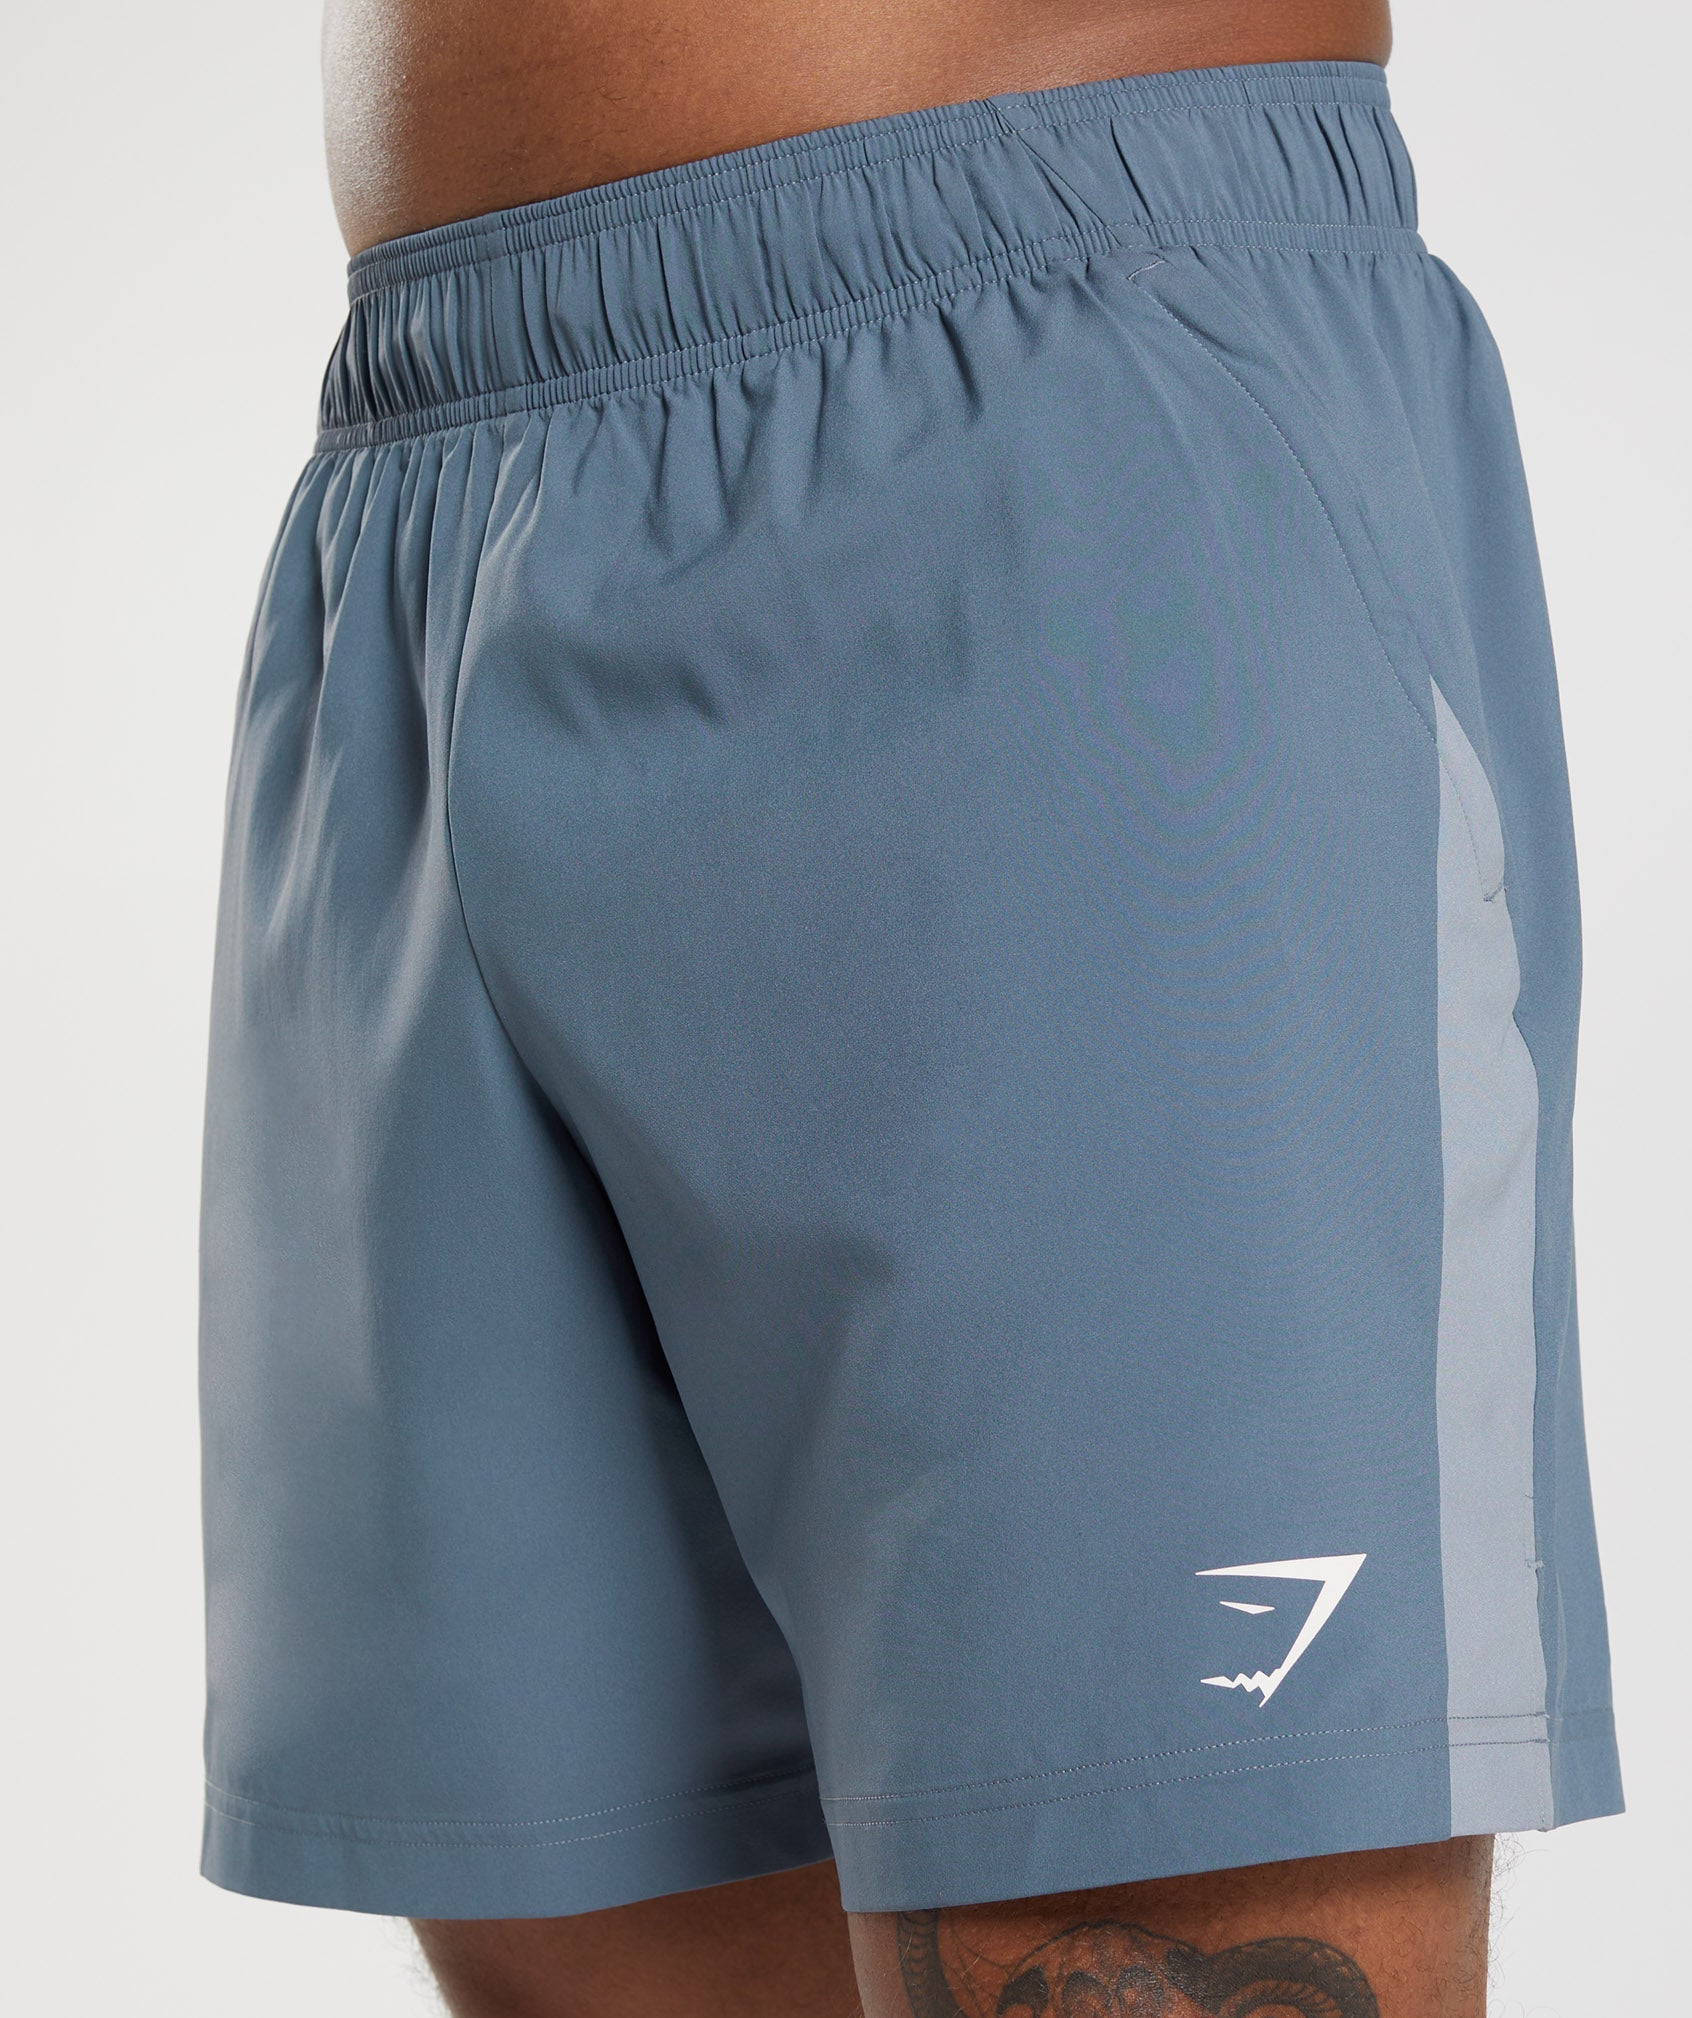 Sport Shorts in Evening Blue/Drift Grey